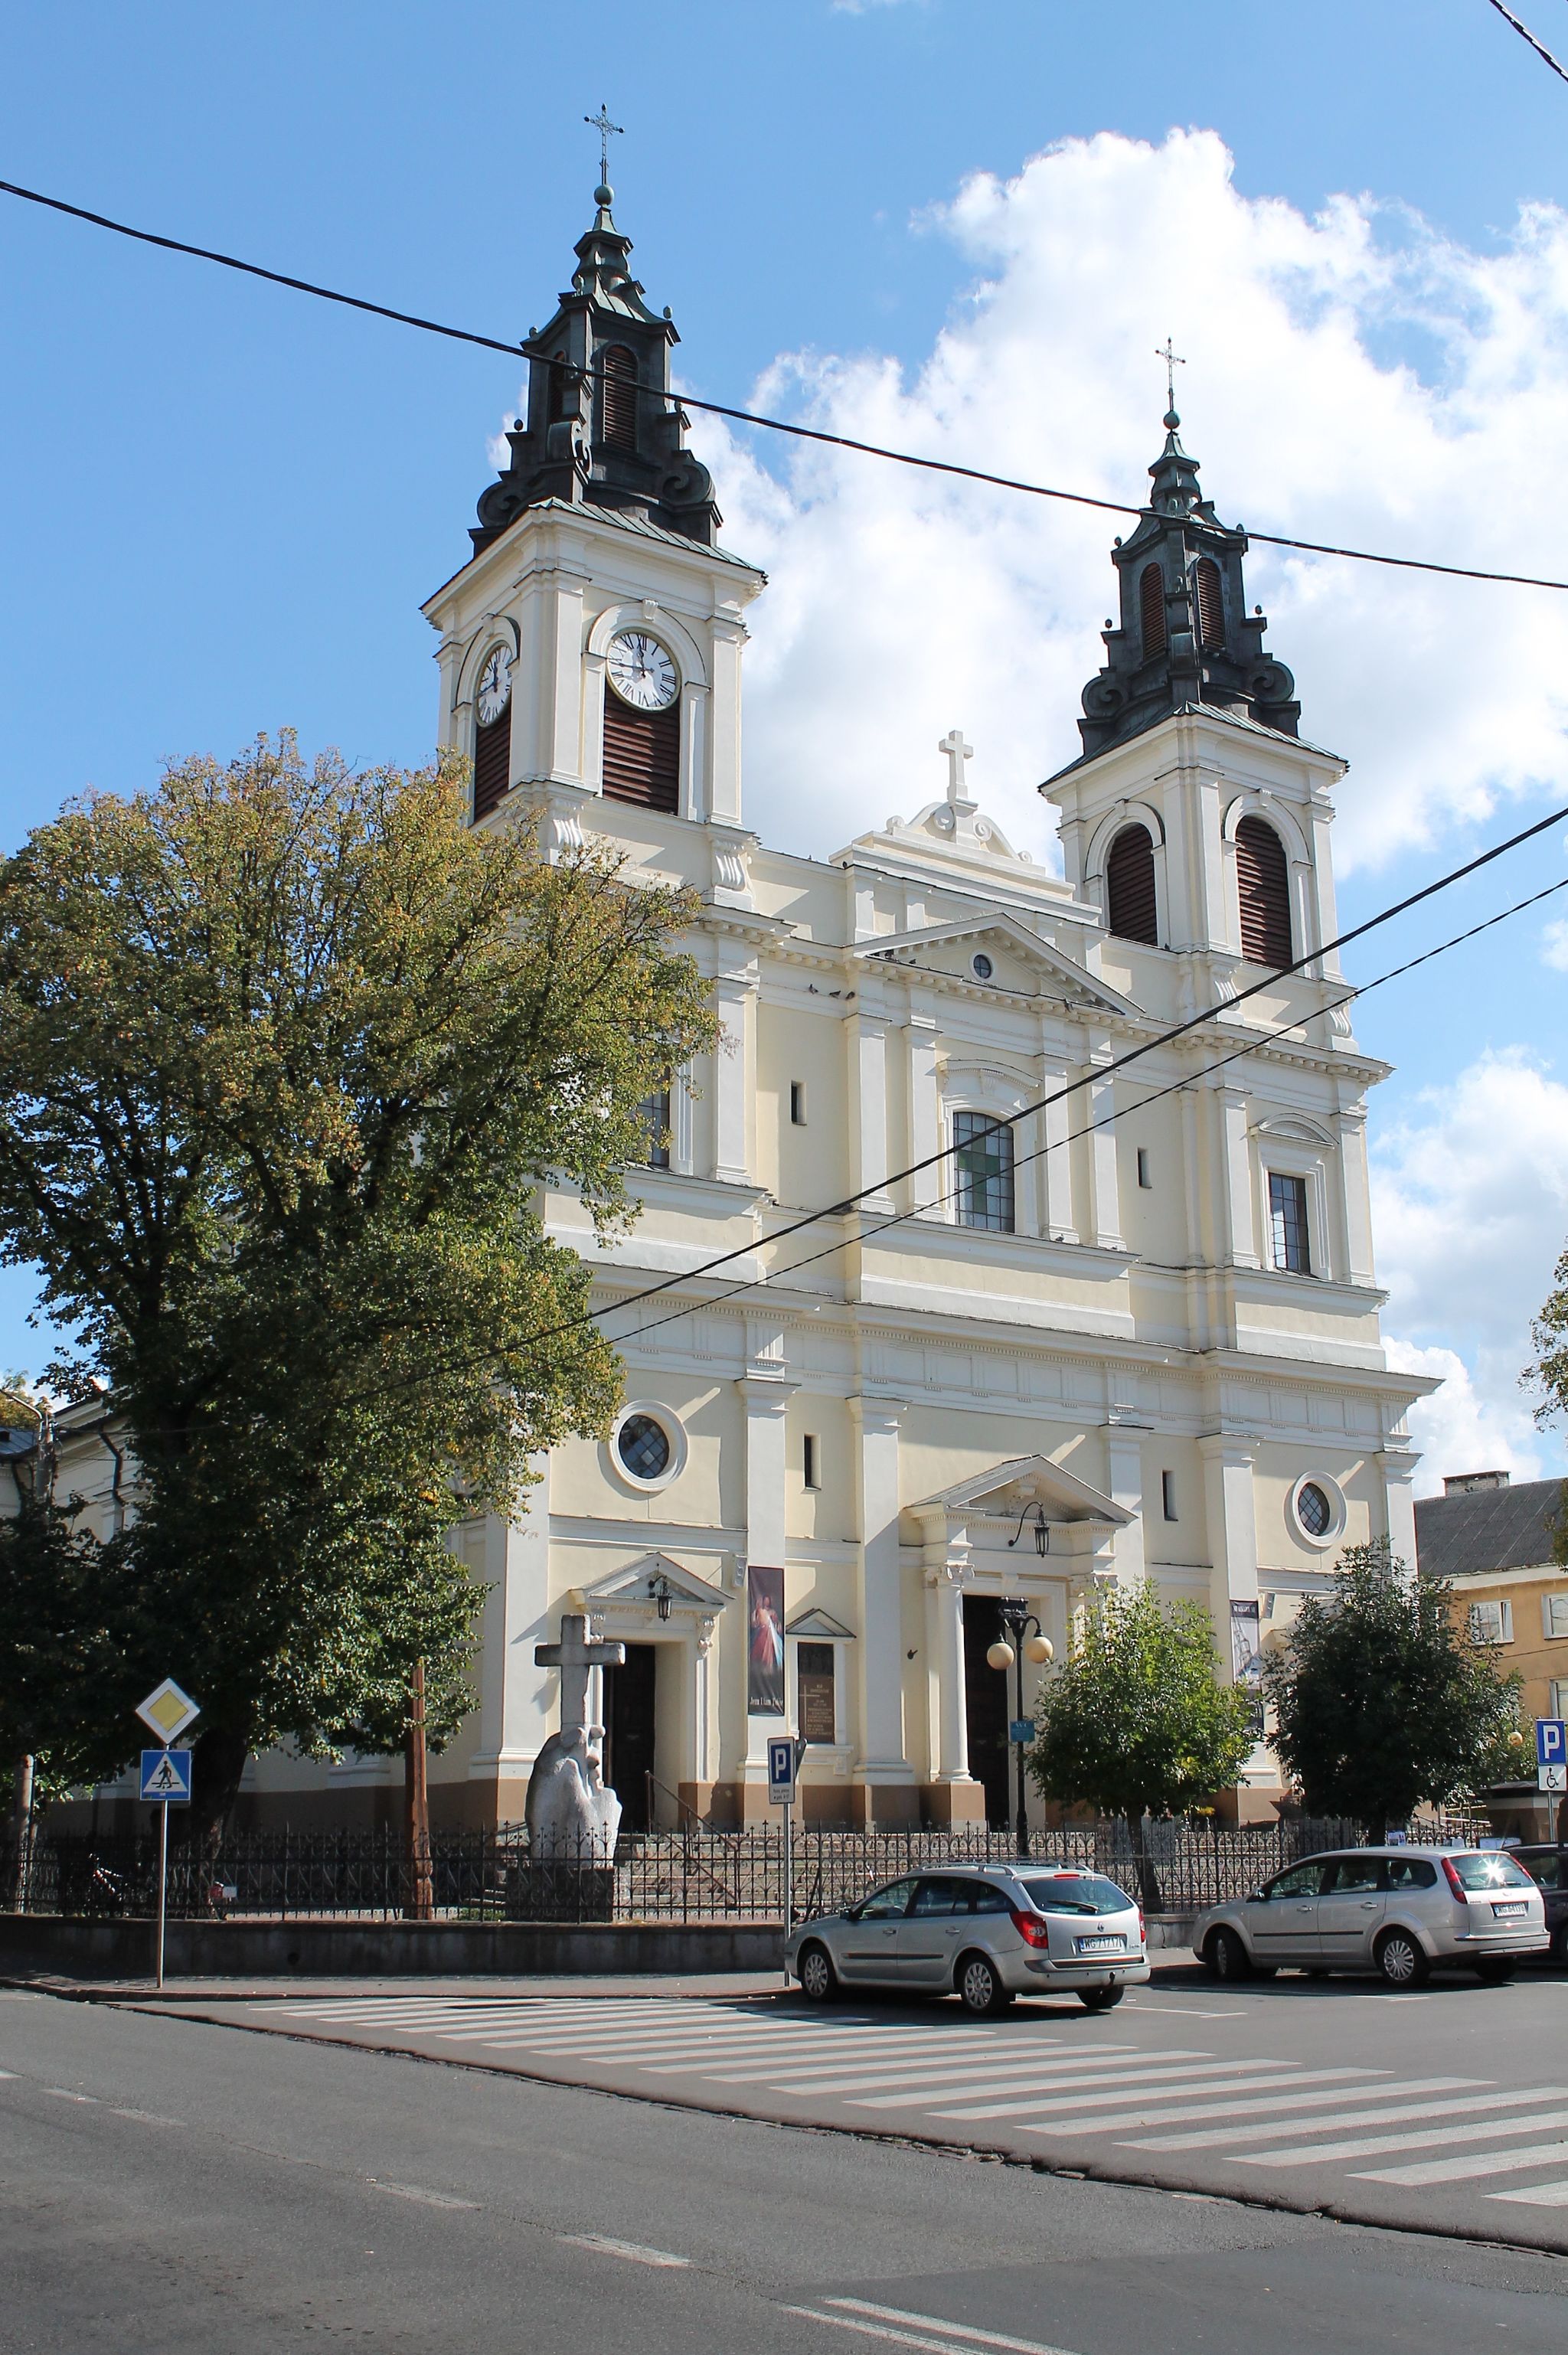 Kościół p.w. Przemienienia Pańskiego w Garwolinie konsekrowany w 1900 roku. Fot. Olga Ostolska, 2012 r. (CC BY-SA 3.0)